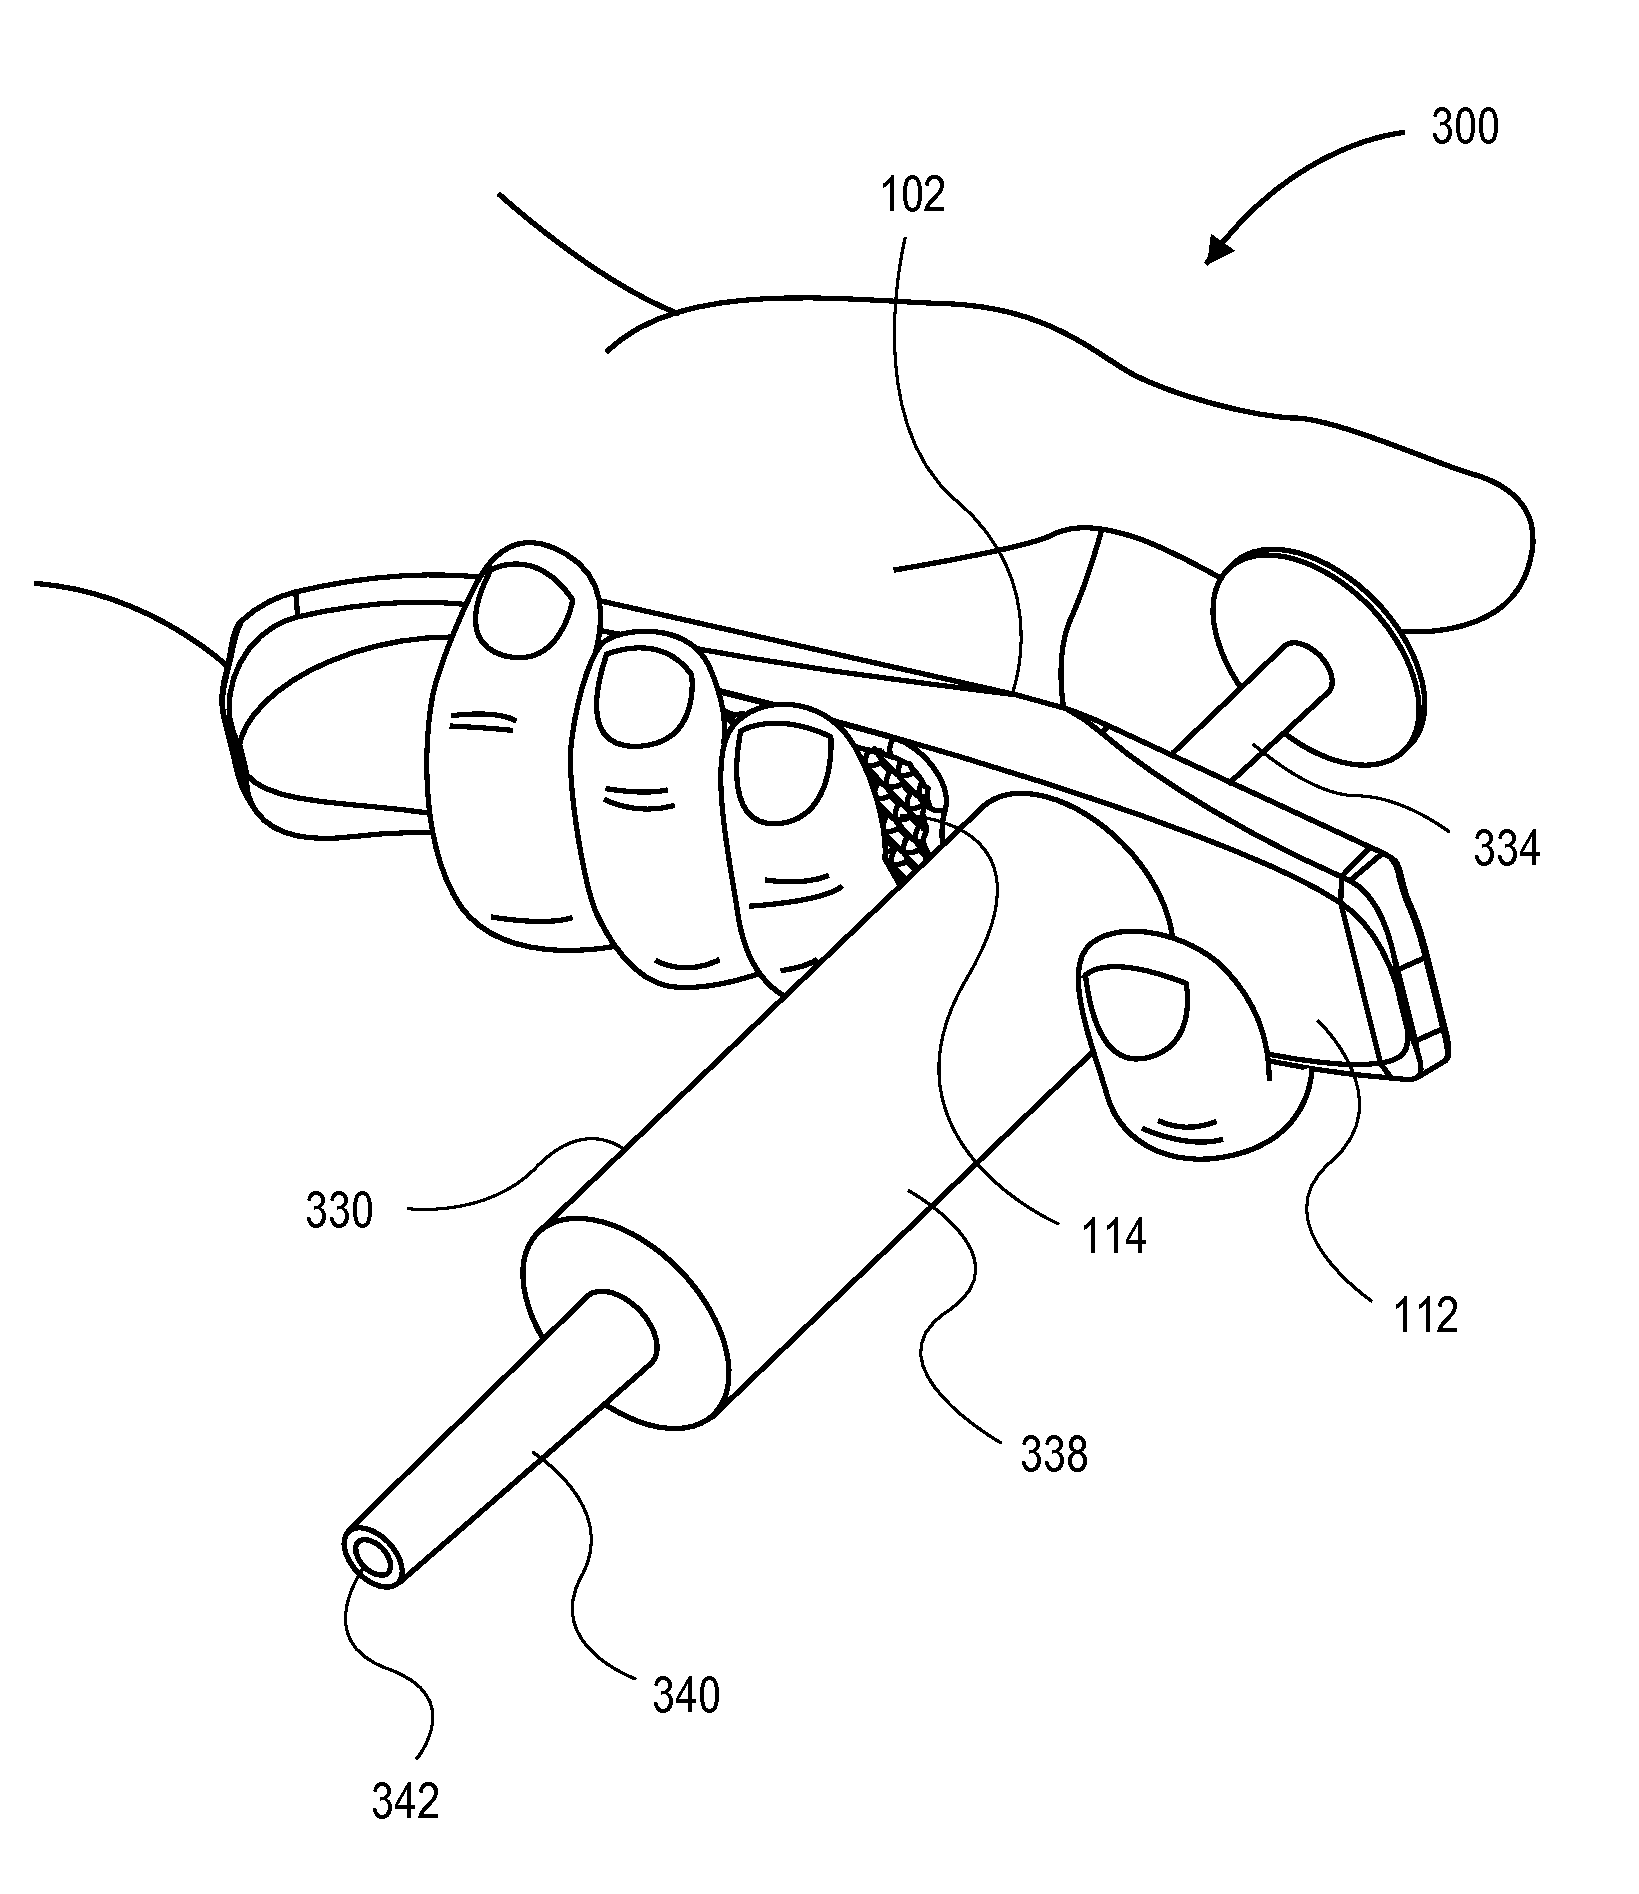 Syringe handle device